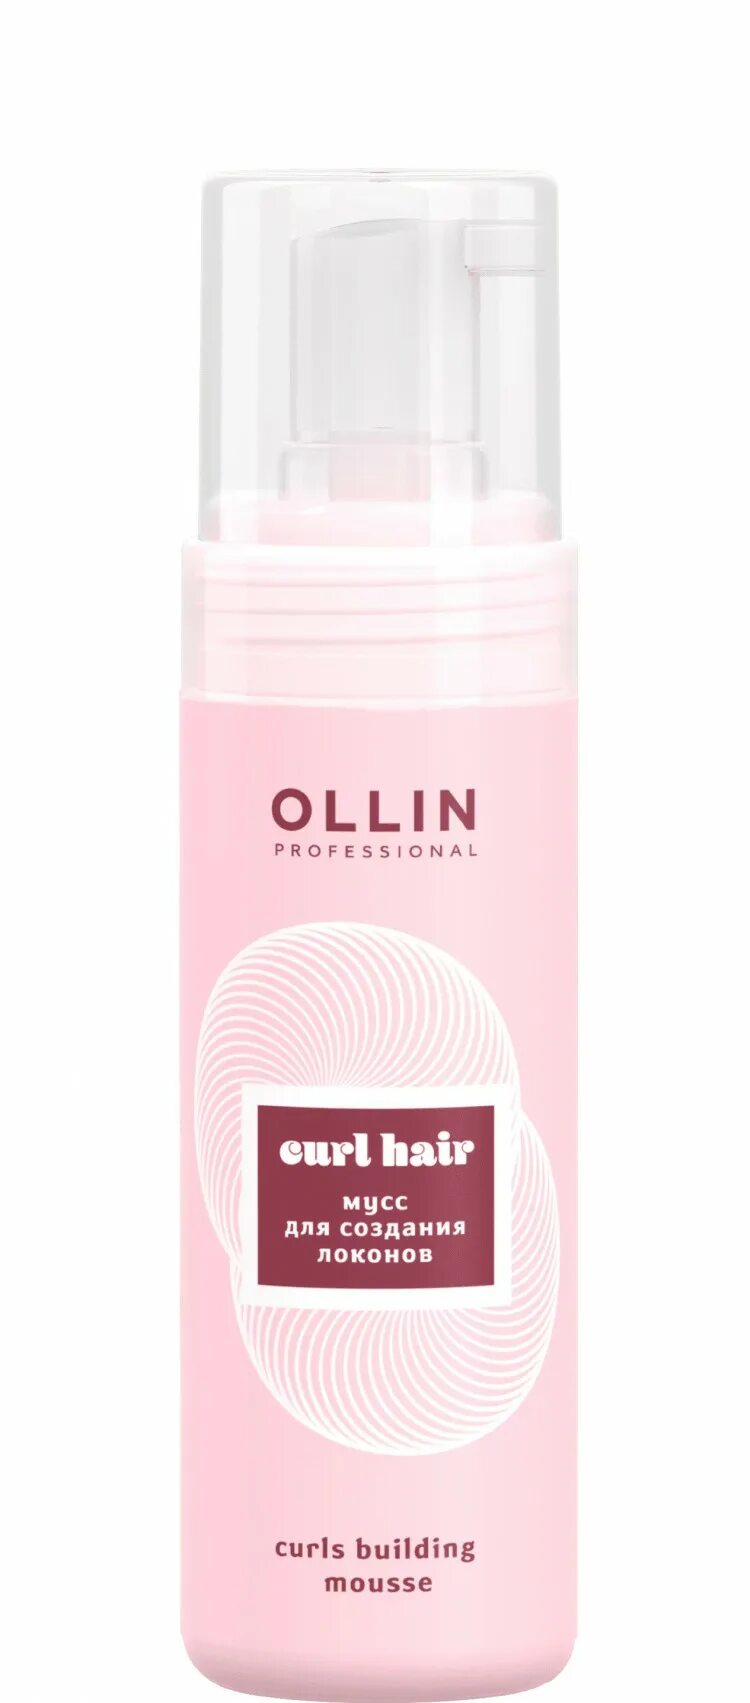 Curl building. Ollin perfect hair увлажняющий мист-спрей для волос и тела 120мл. Мусс для создания локонов. Олин мусс для создания локонов. Оллин для волос мусс розовый.